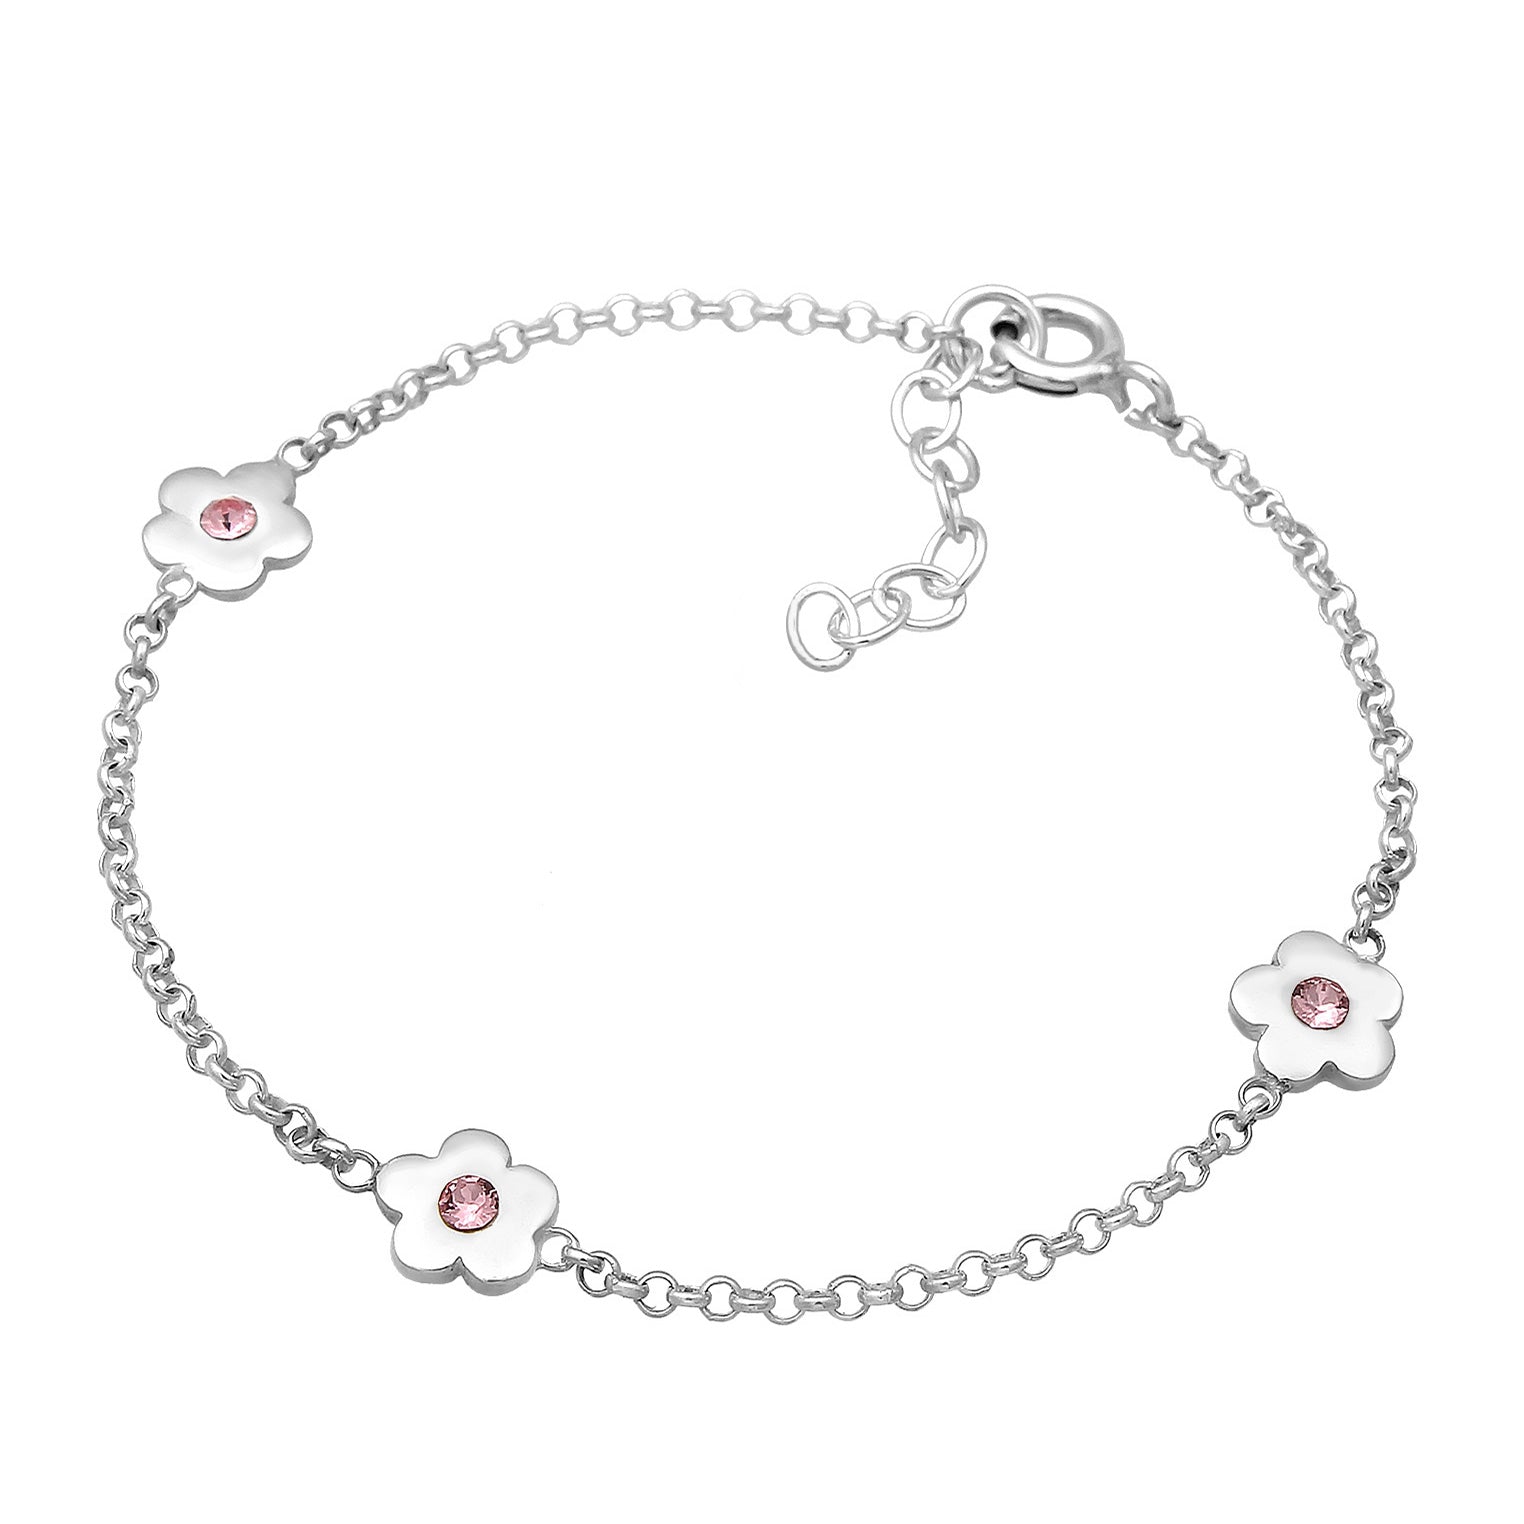 Rosa ( Jewelry – Kristall Blume Armband | Elli )